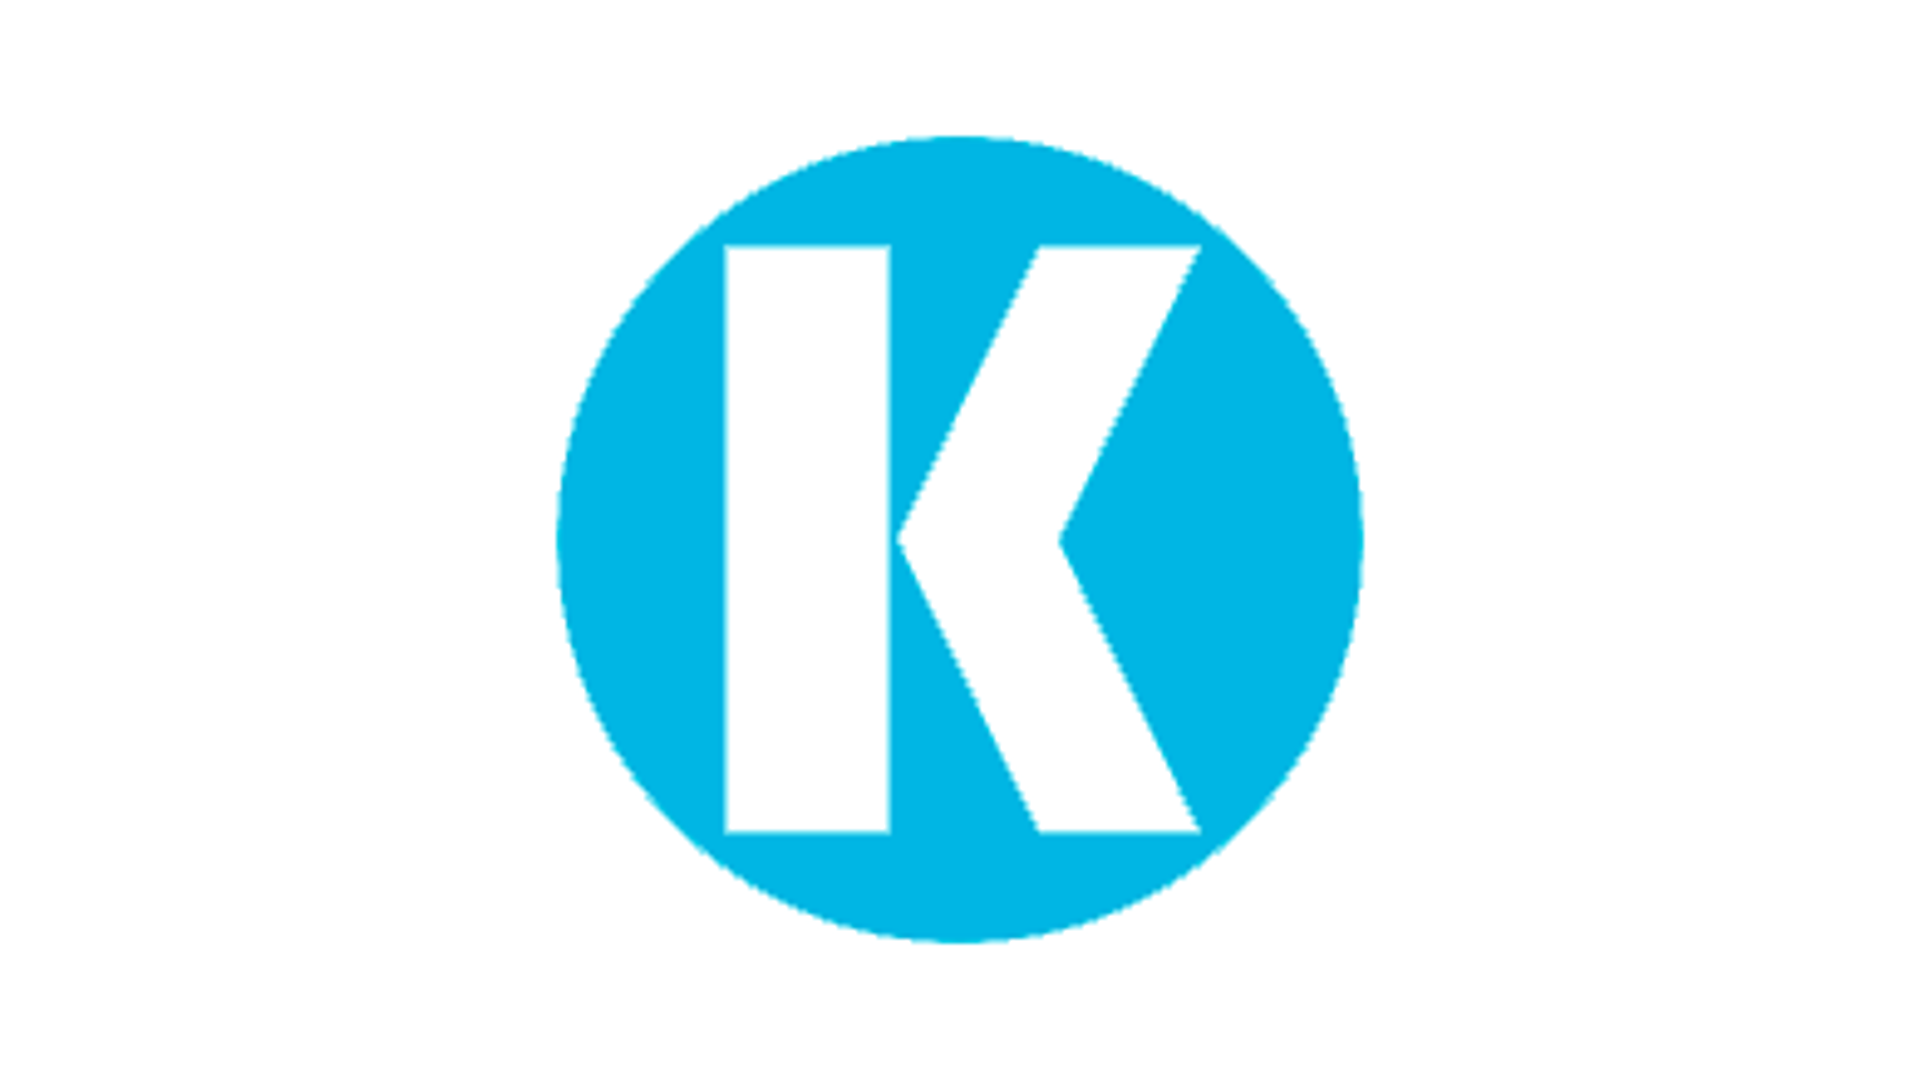 Knorr-Bremse image trademark